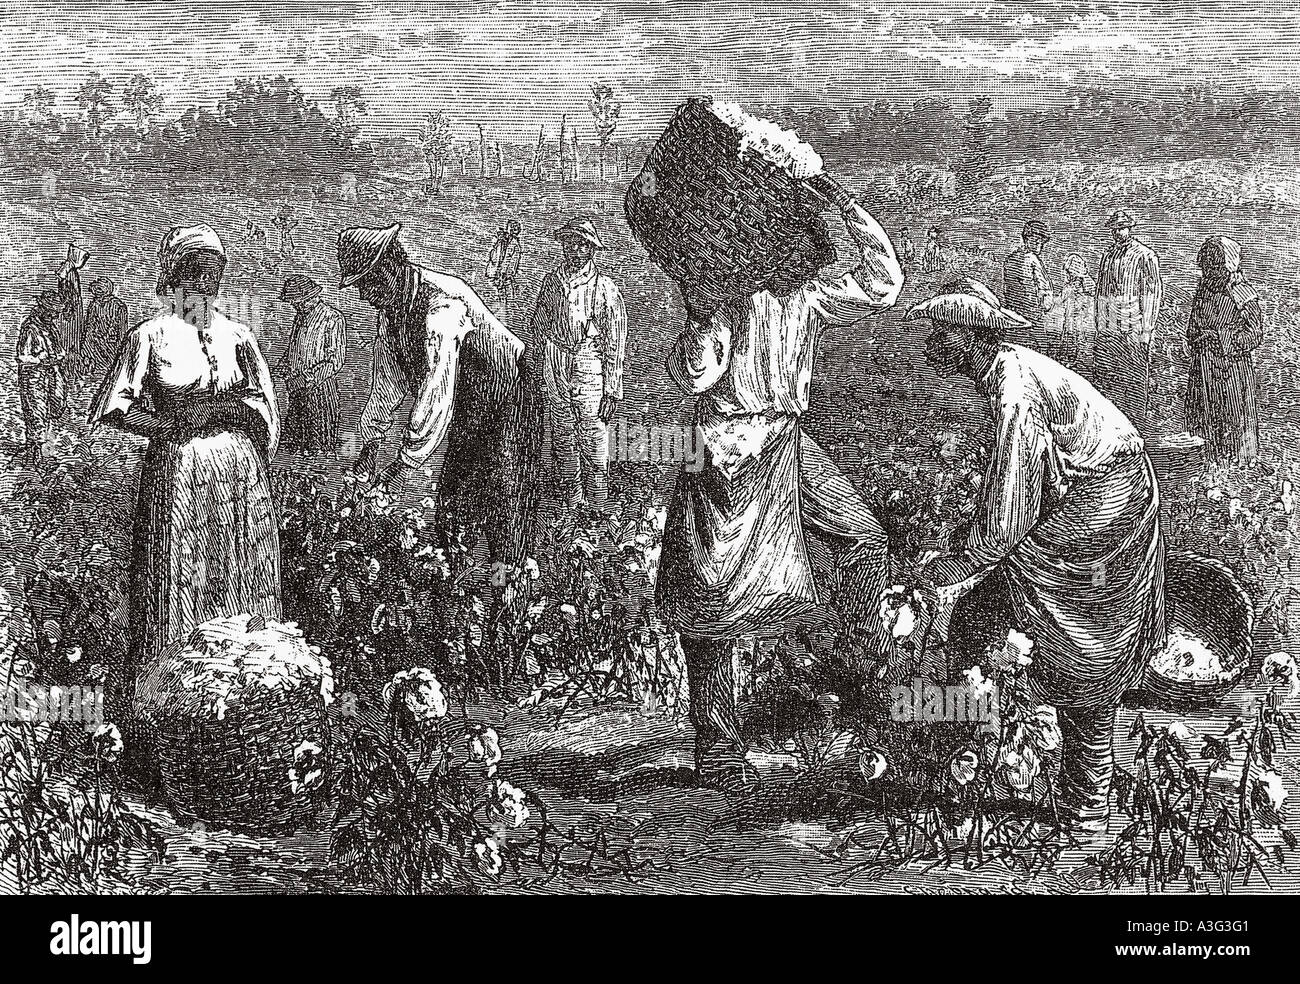 La raccolta del cotone in Louisiana, Stati Uniti d'America circa 1850 Foto Stock